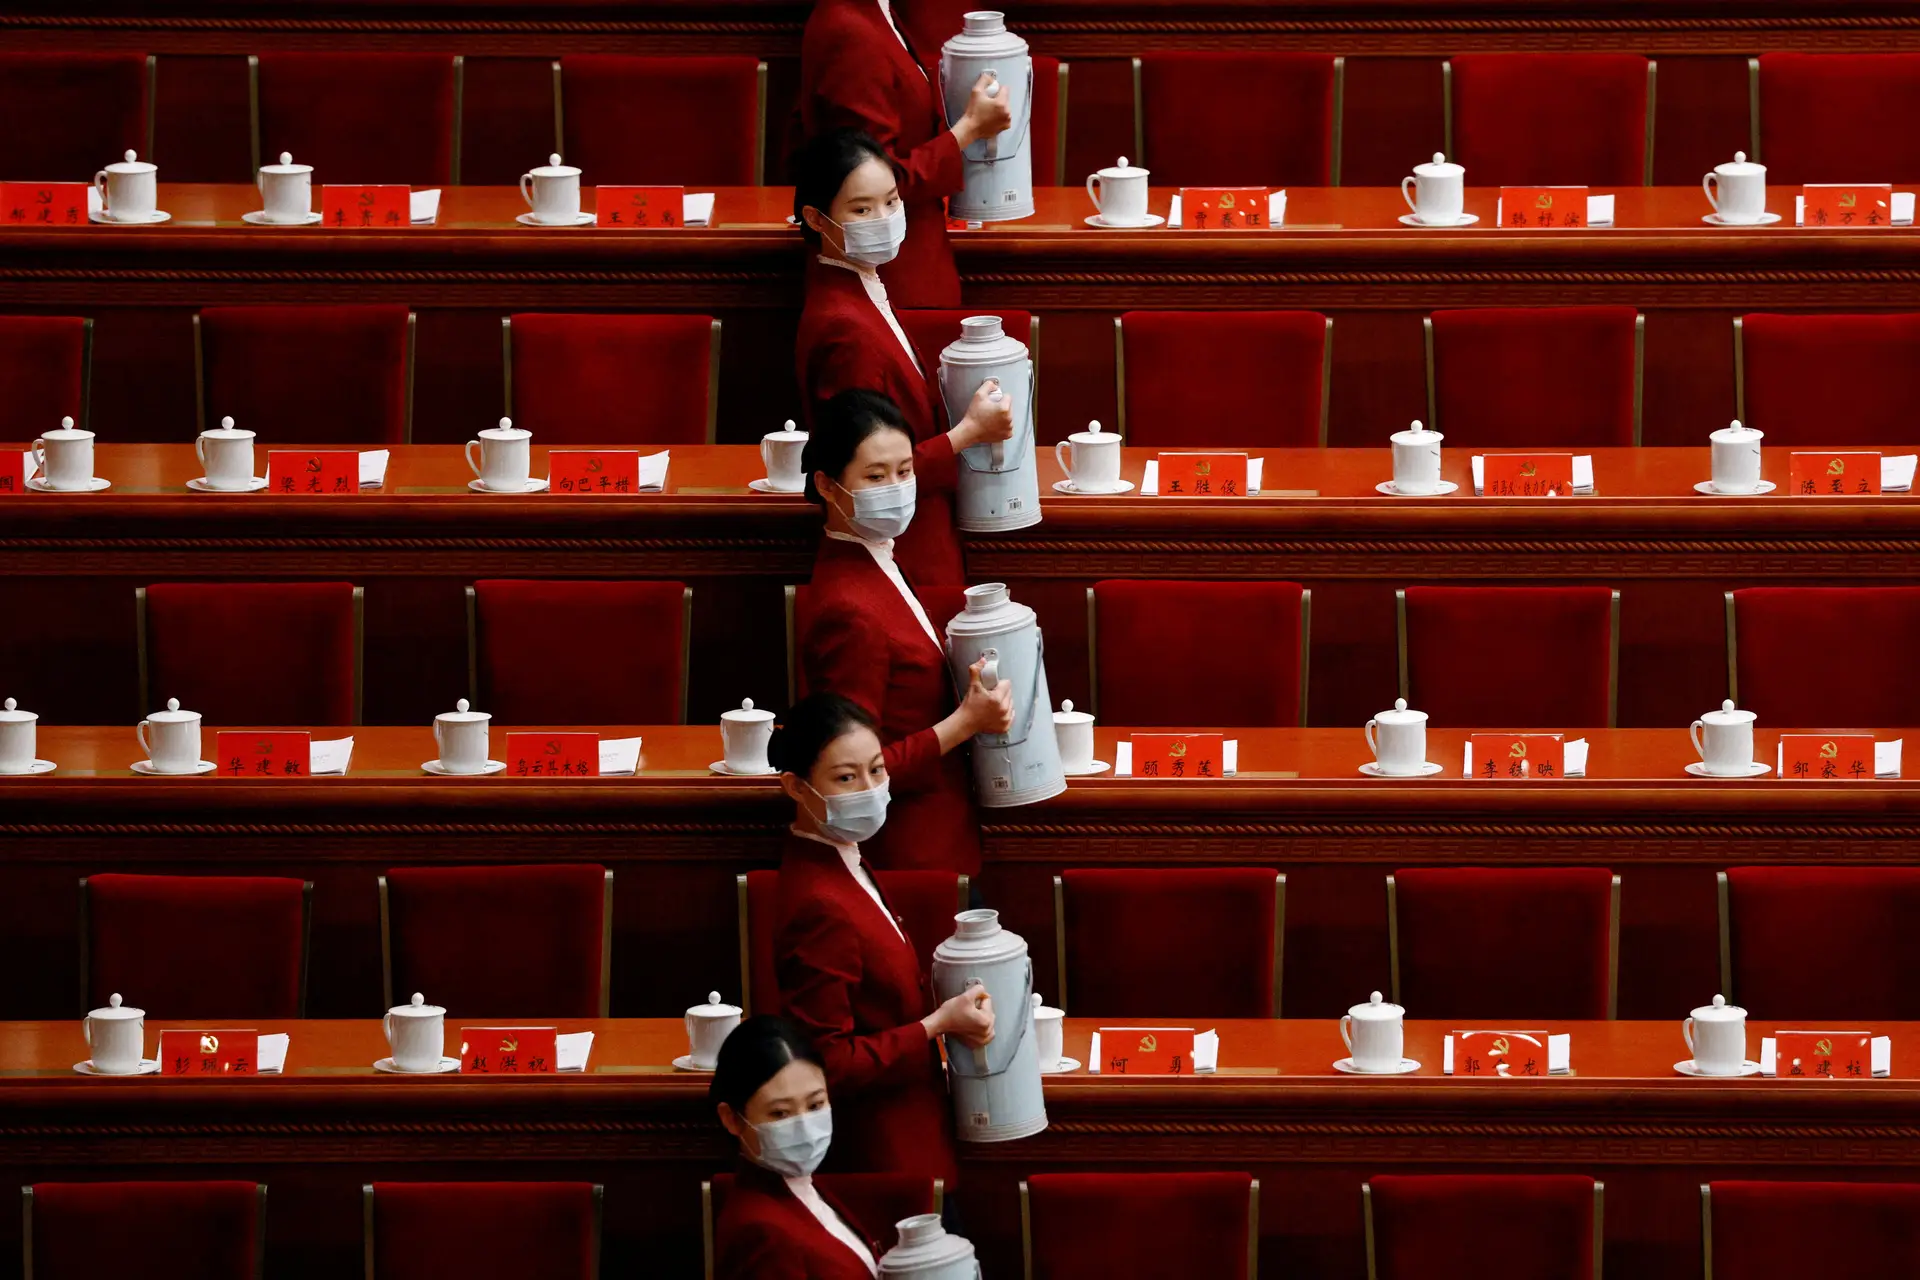 AUTORIDADE. Regado com o tradicional chá, o Congresso do Partido Comunista Chinês consagrou a liderança indiscutível de Xi Jinping